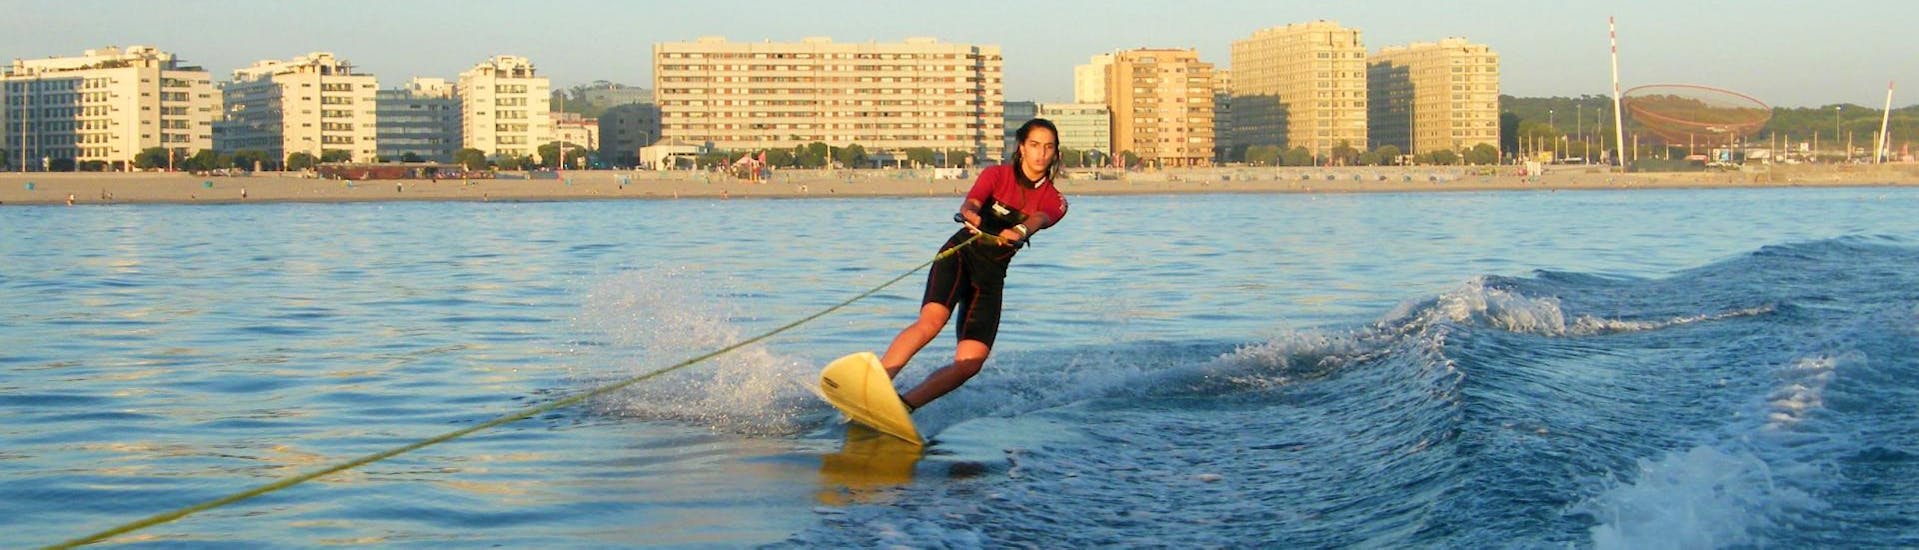 Durante un curso de Wakeboard & Wakesurf privado, una mujer disfruta del wakesurf bajo la supervisión de un instructor certificado de Surfaventura.